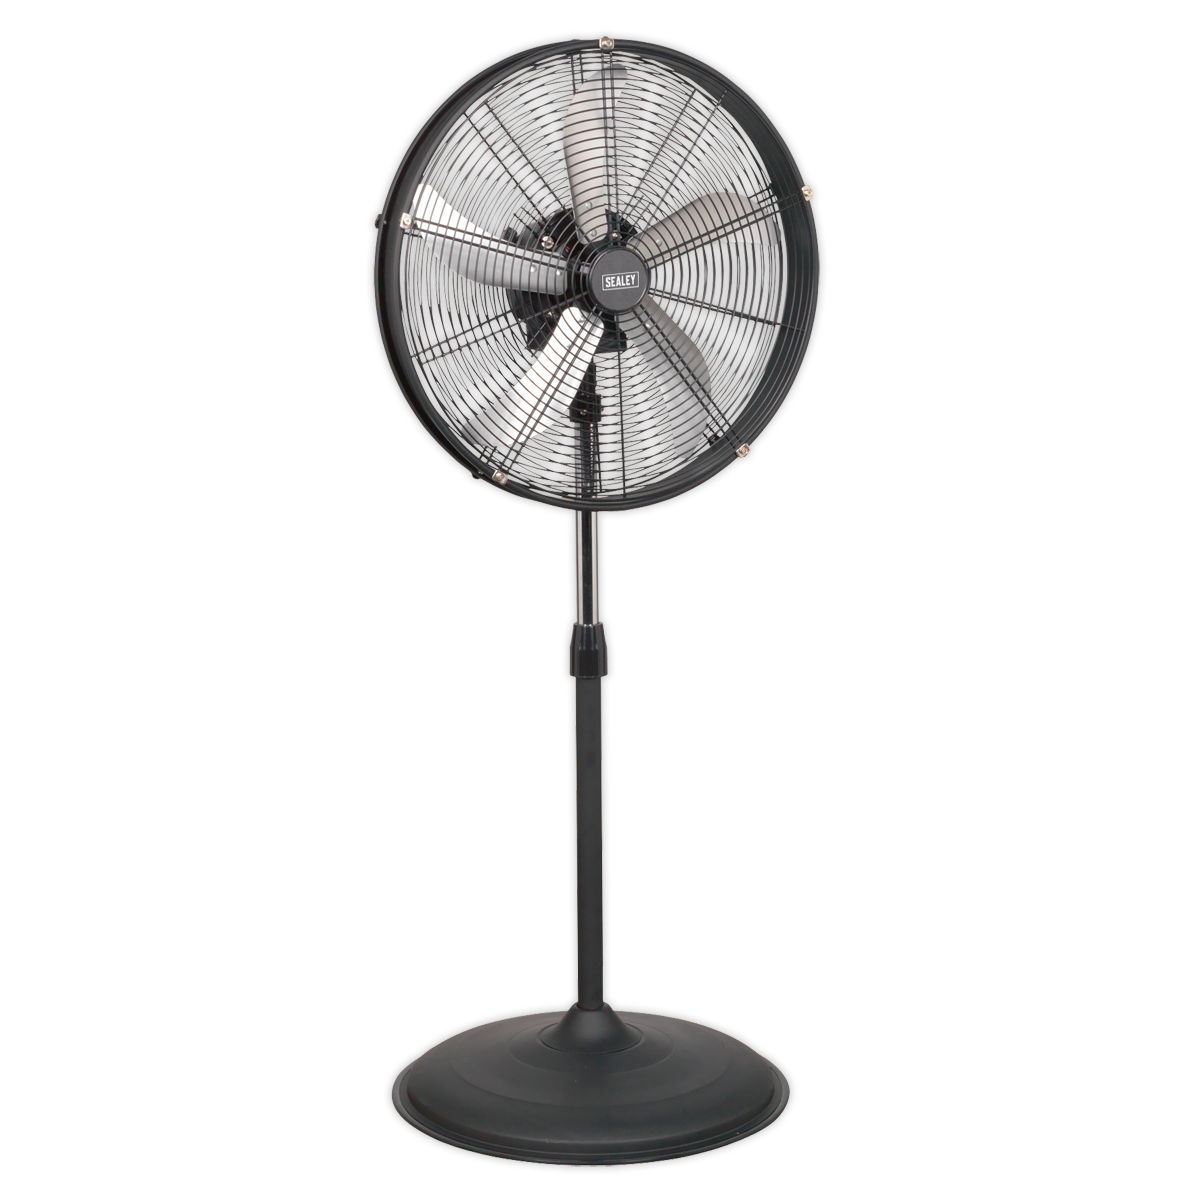 Sealey Industrial High Velocity Oscillating Pedestal Fan 20" 230V